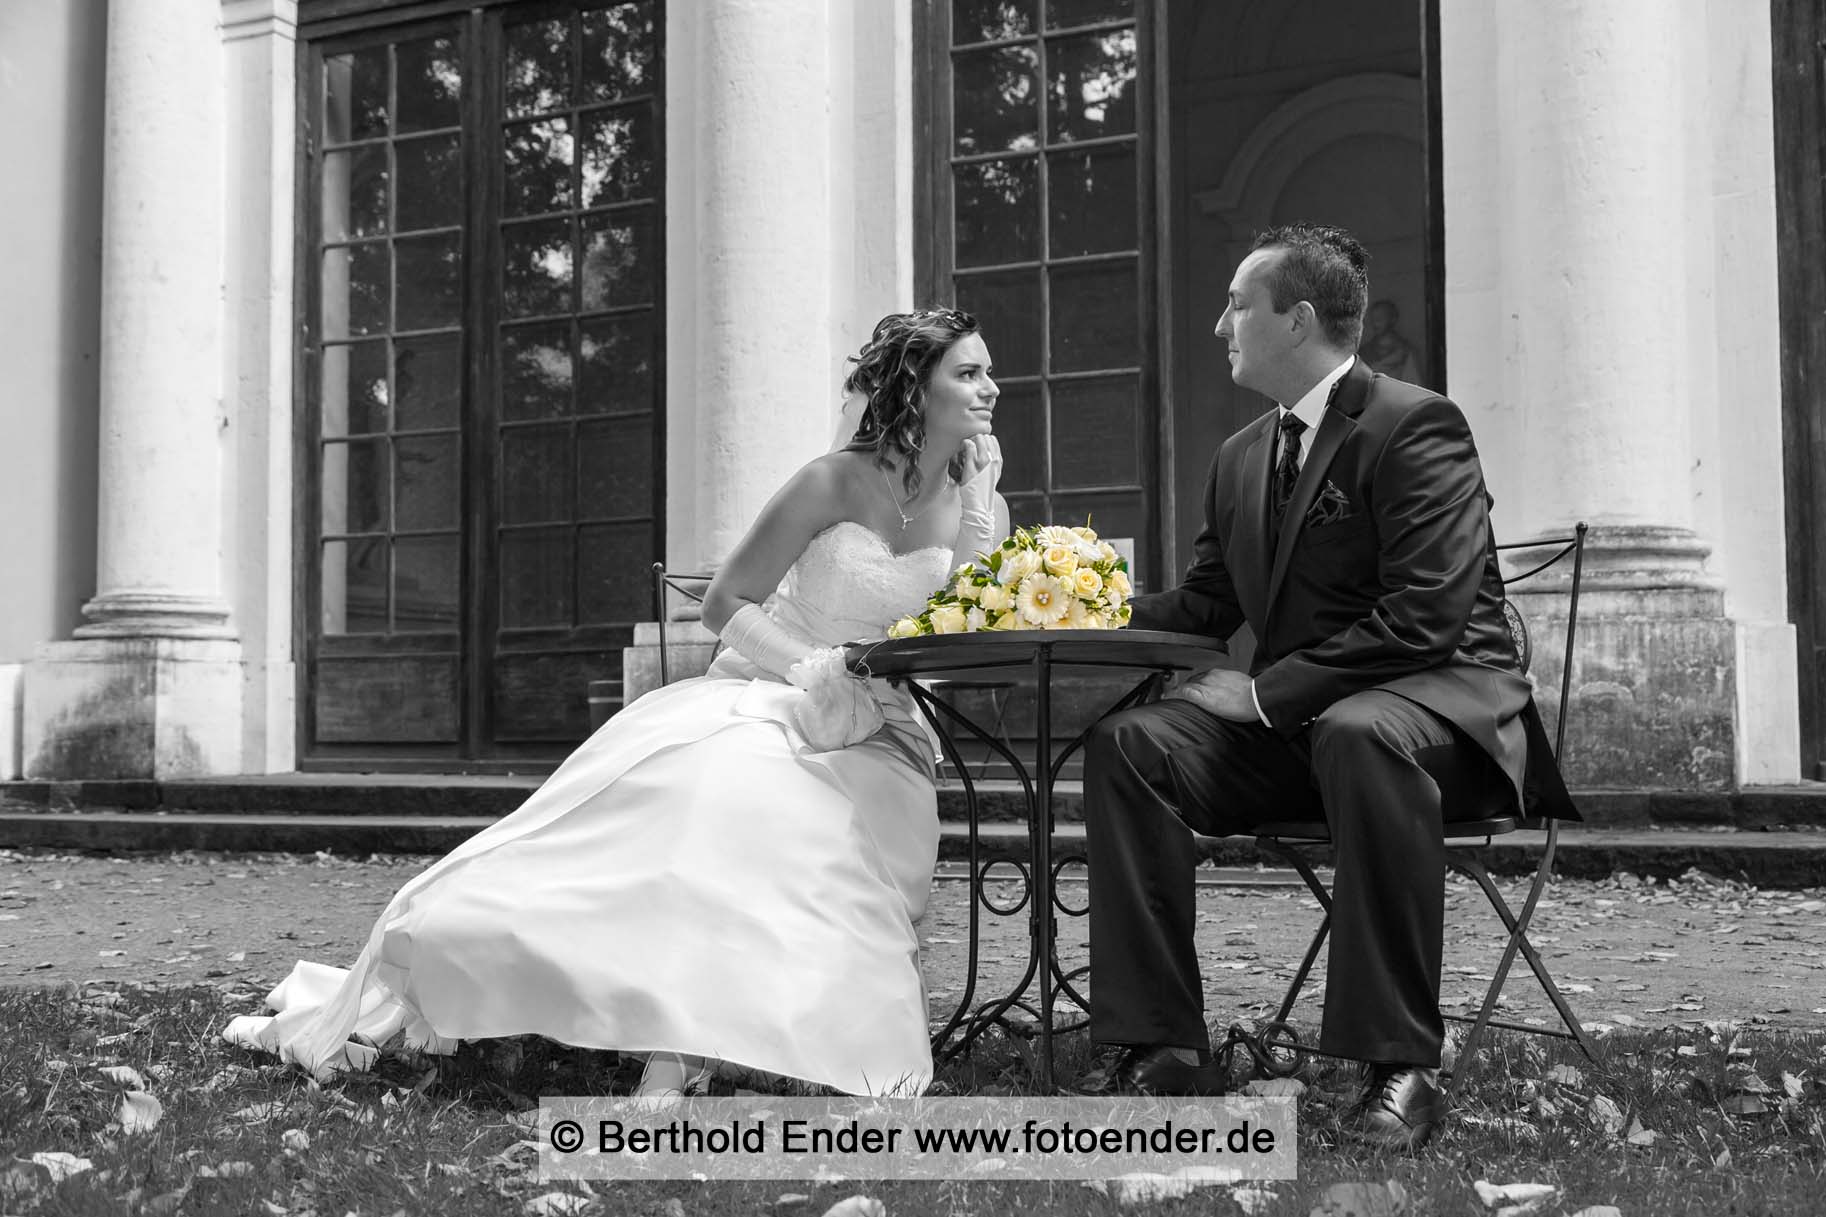 Brautpaar Shooting im Wörlitzer Park: Hochzeitsfotograf Berthold Ender